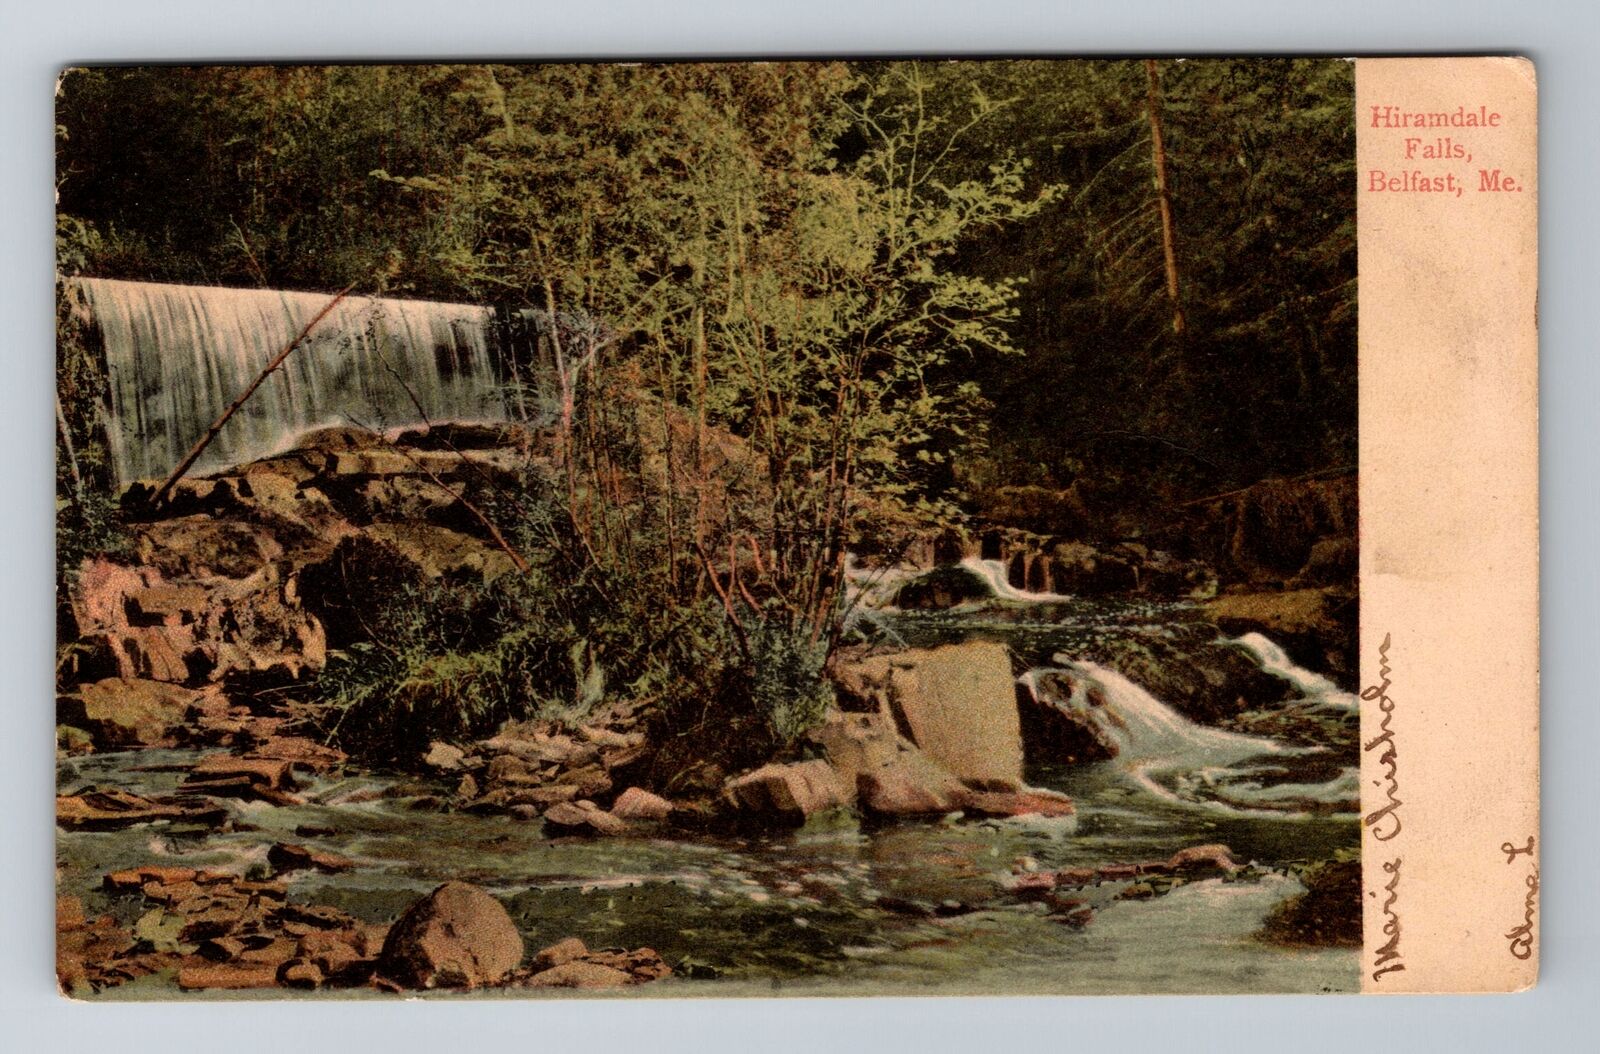 Belfast ME-Maine, Hiramdale Falls, Antique Vintage Souvenir Postcard